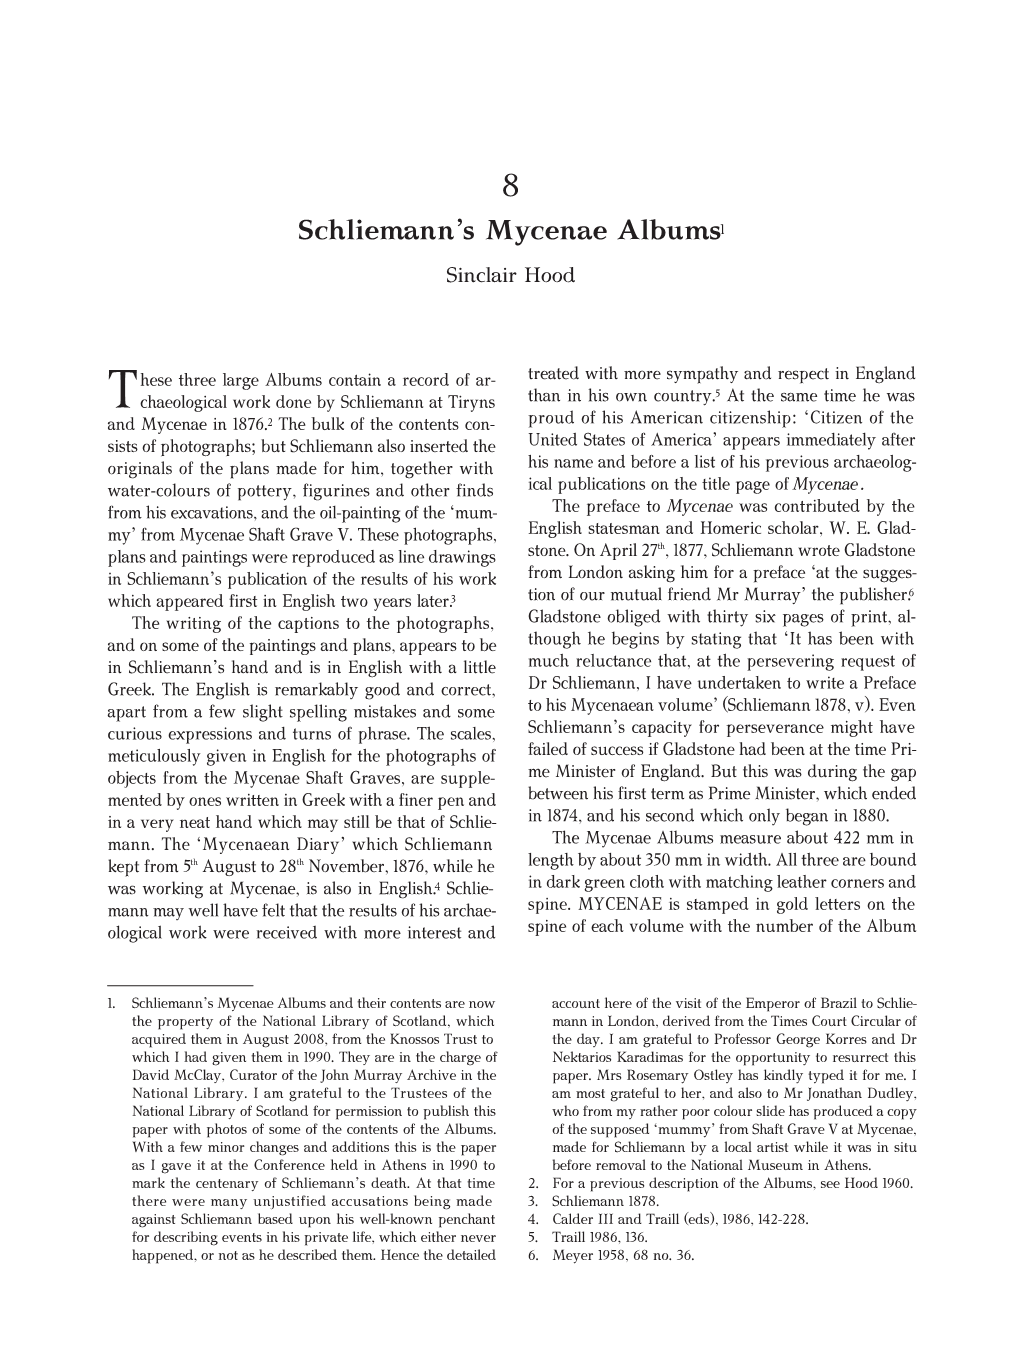 Schliemann's Mycenae Albums